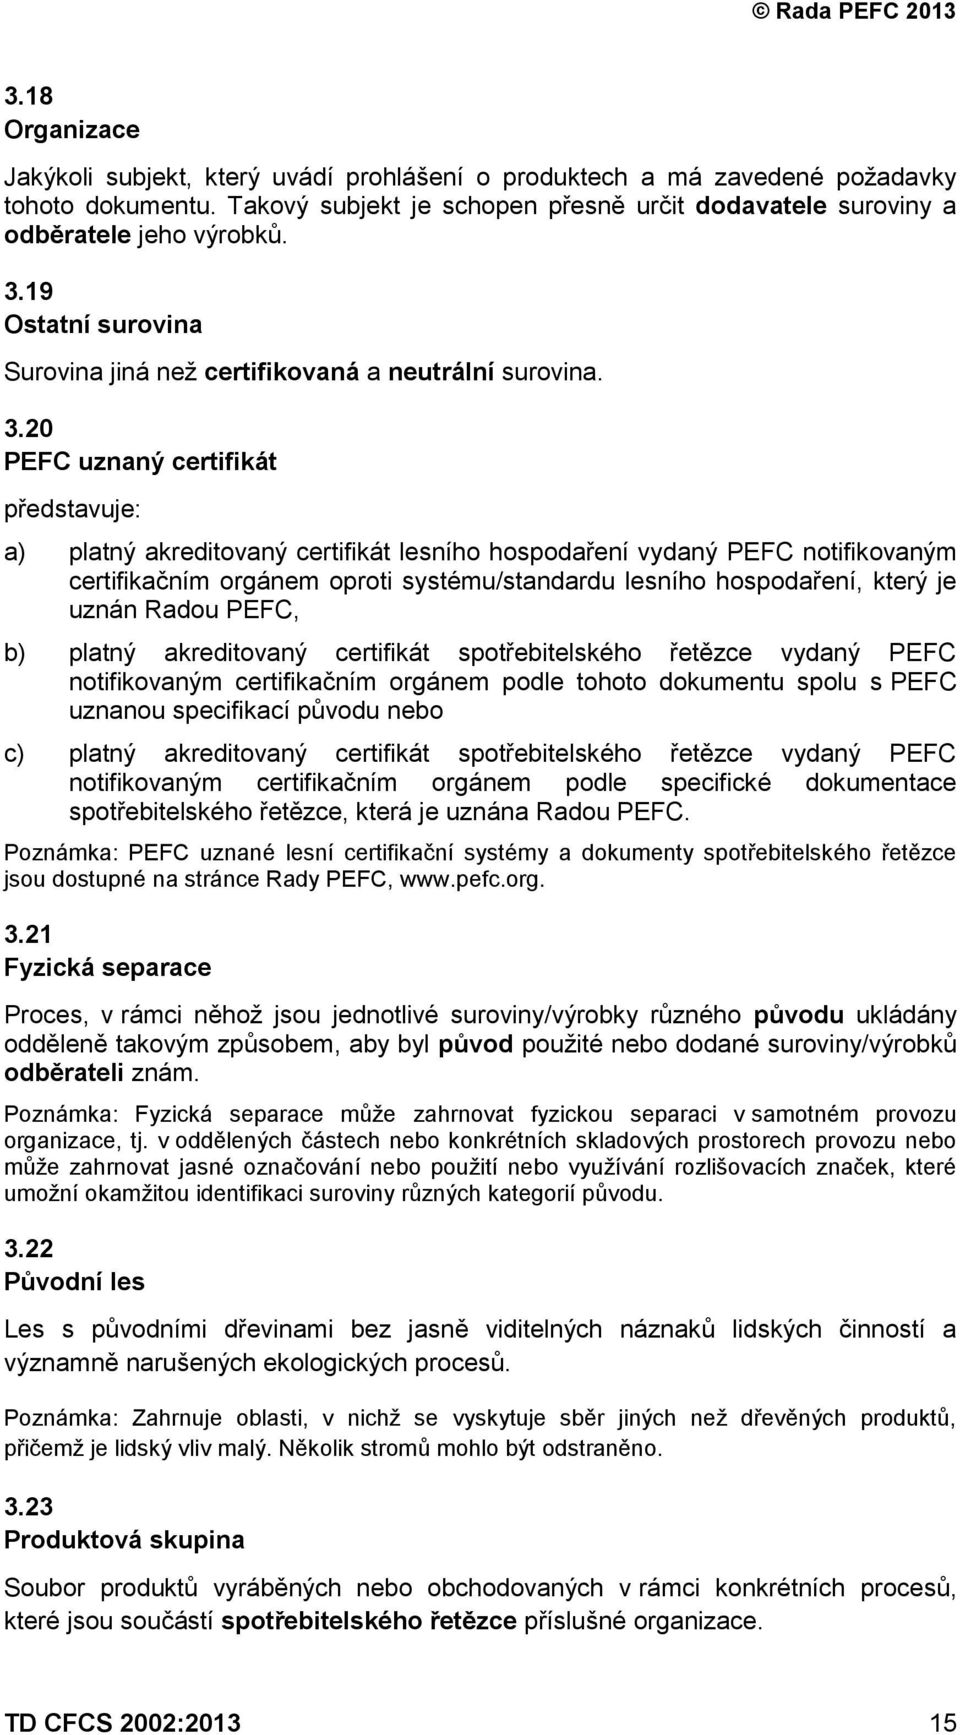 20 PEFC uznaný certifikát představuje: a) platný akreditovaný certifikát lesního hospodaření vydaný PEFC notifikovaným certifikačním orgánem oproti systému/standardu lesního hospodaření, který je